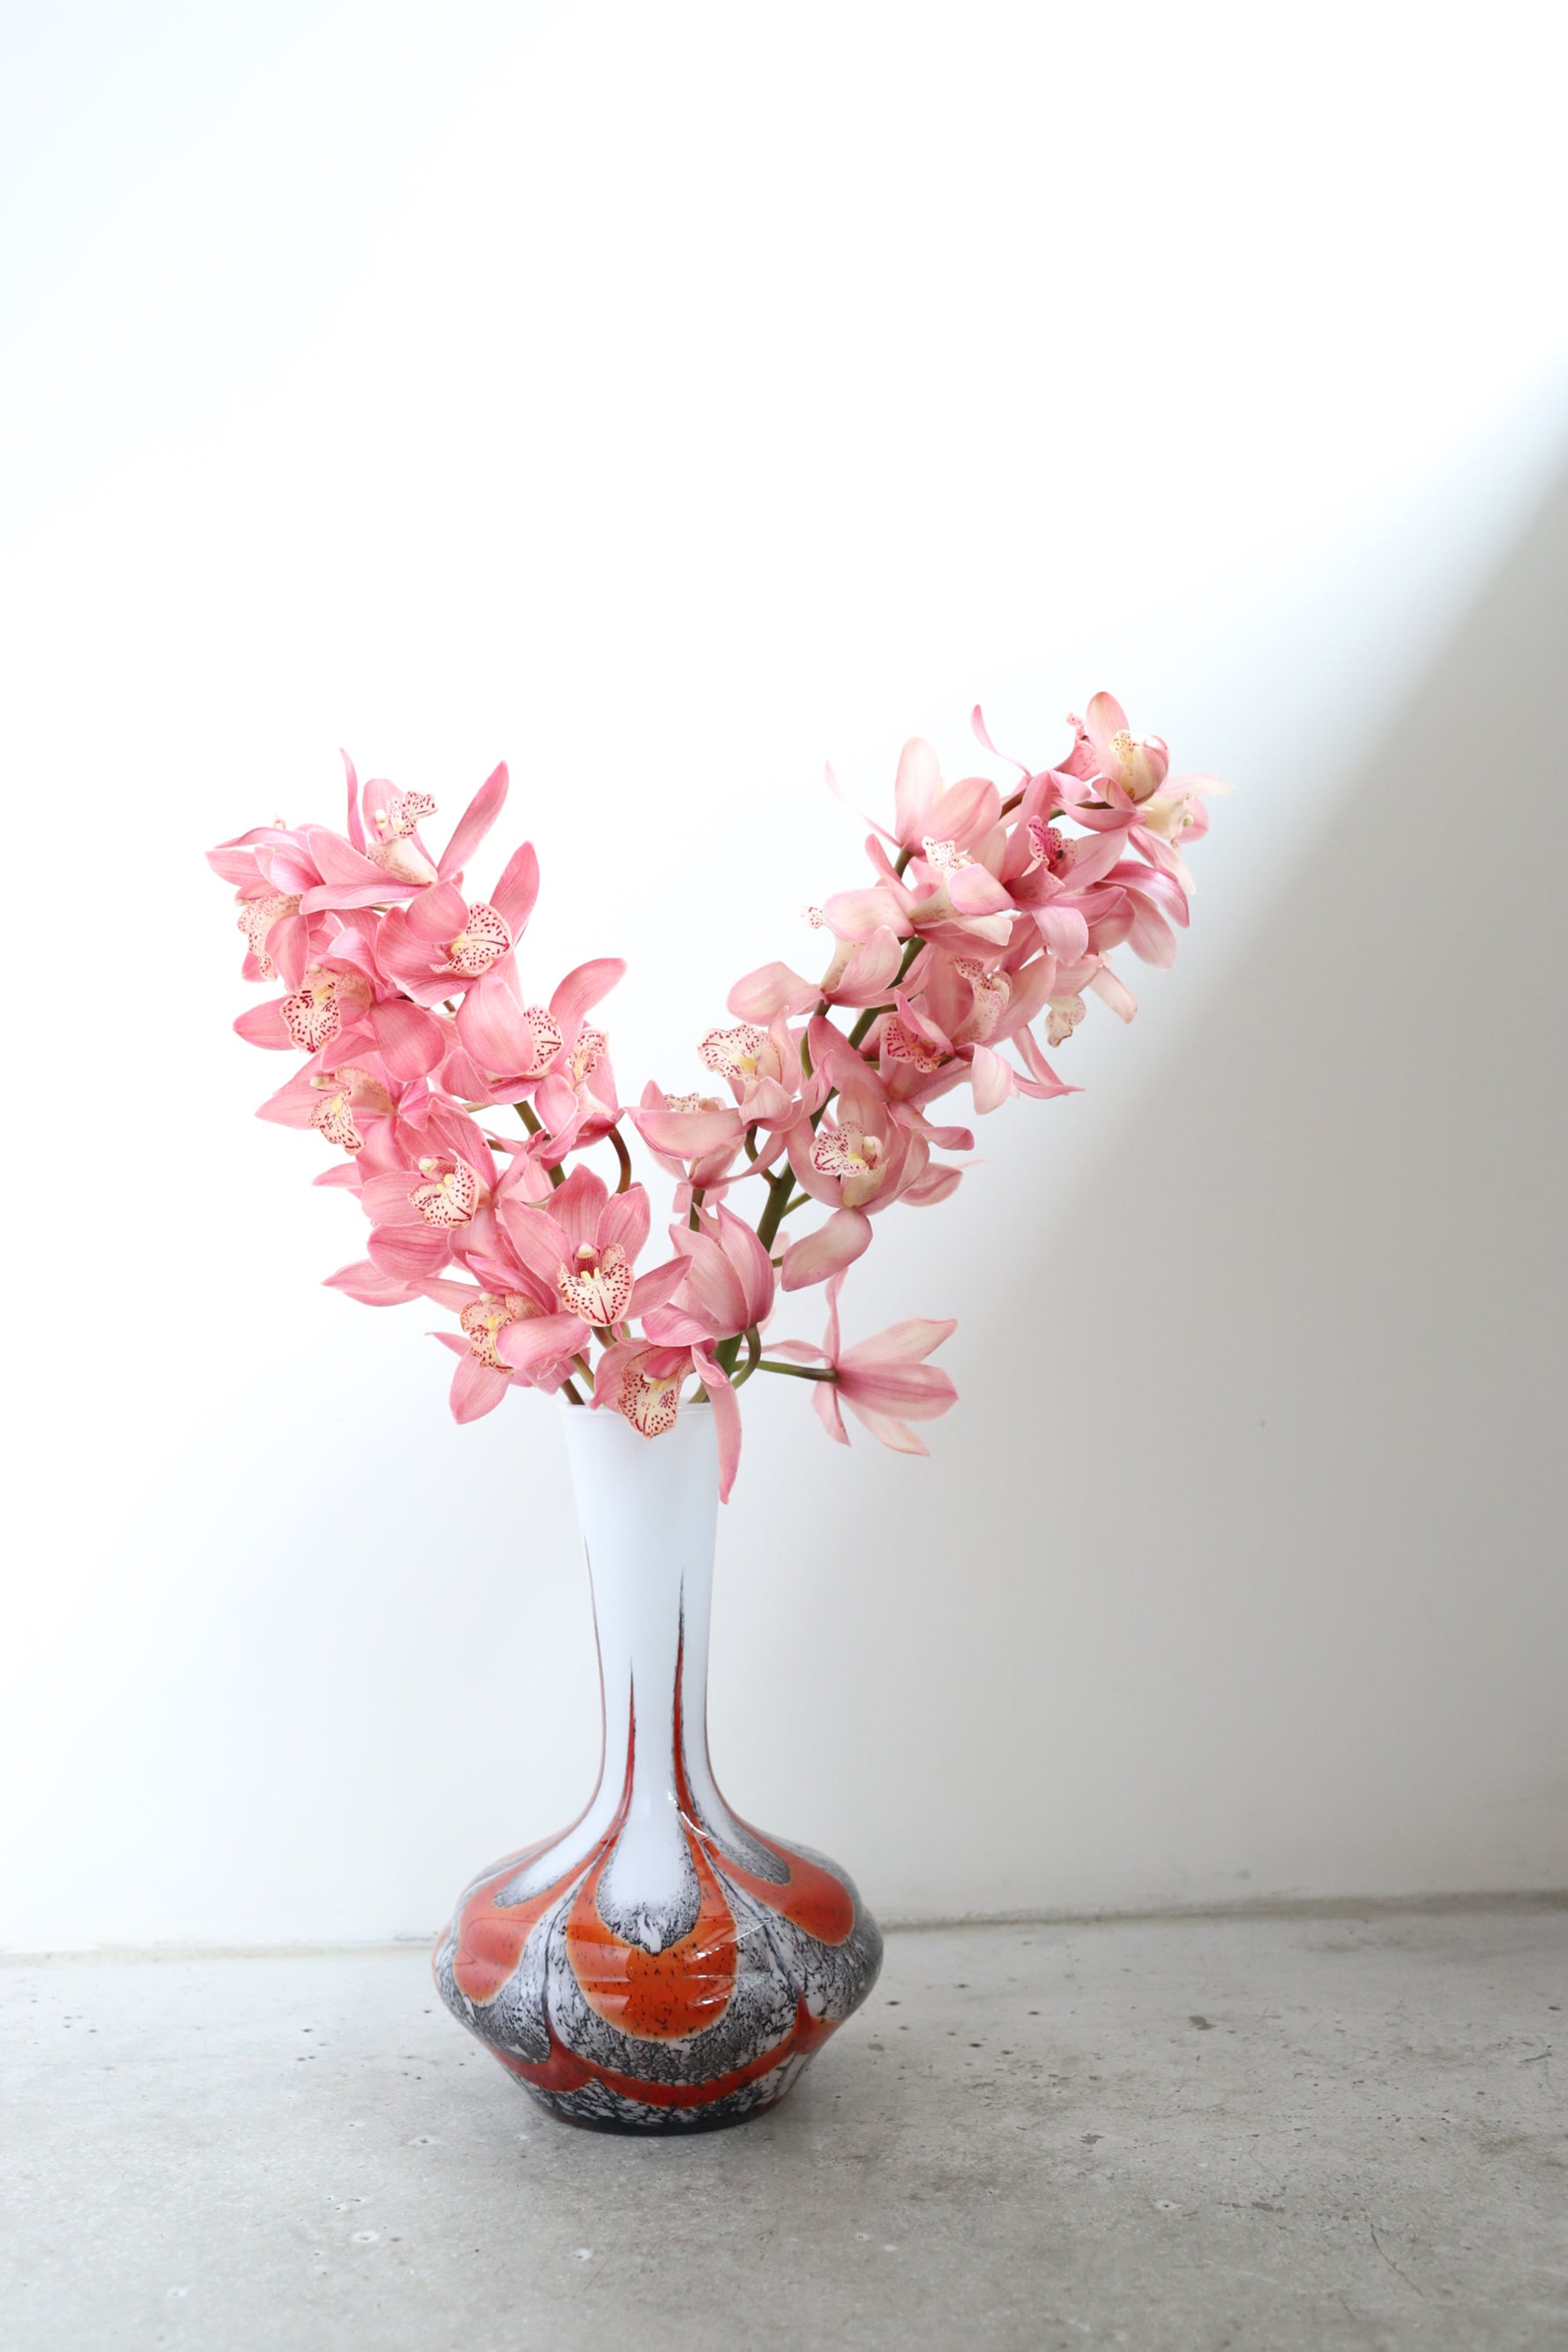 November Vase #10